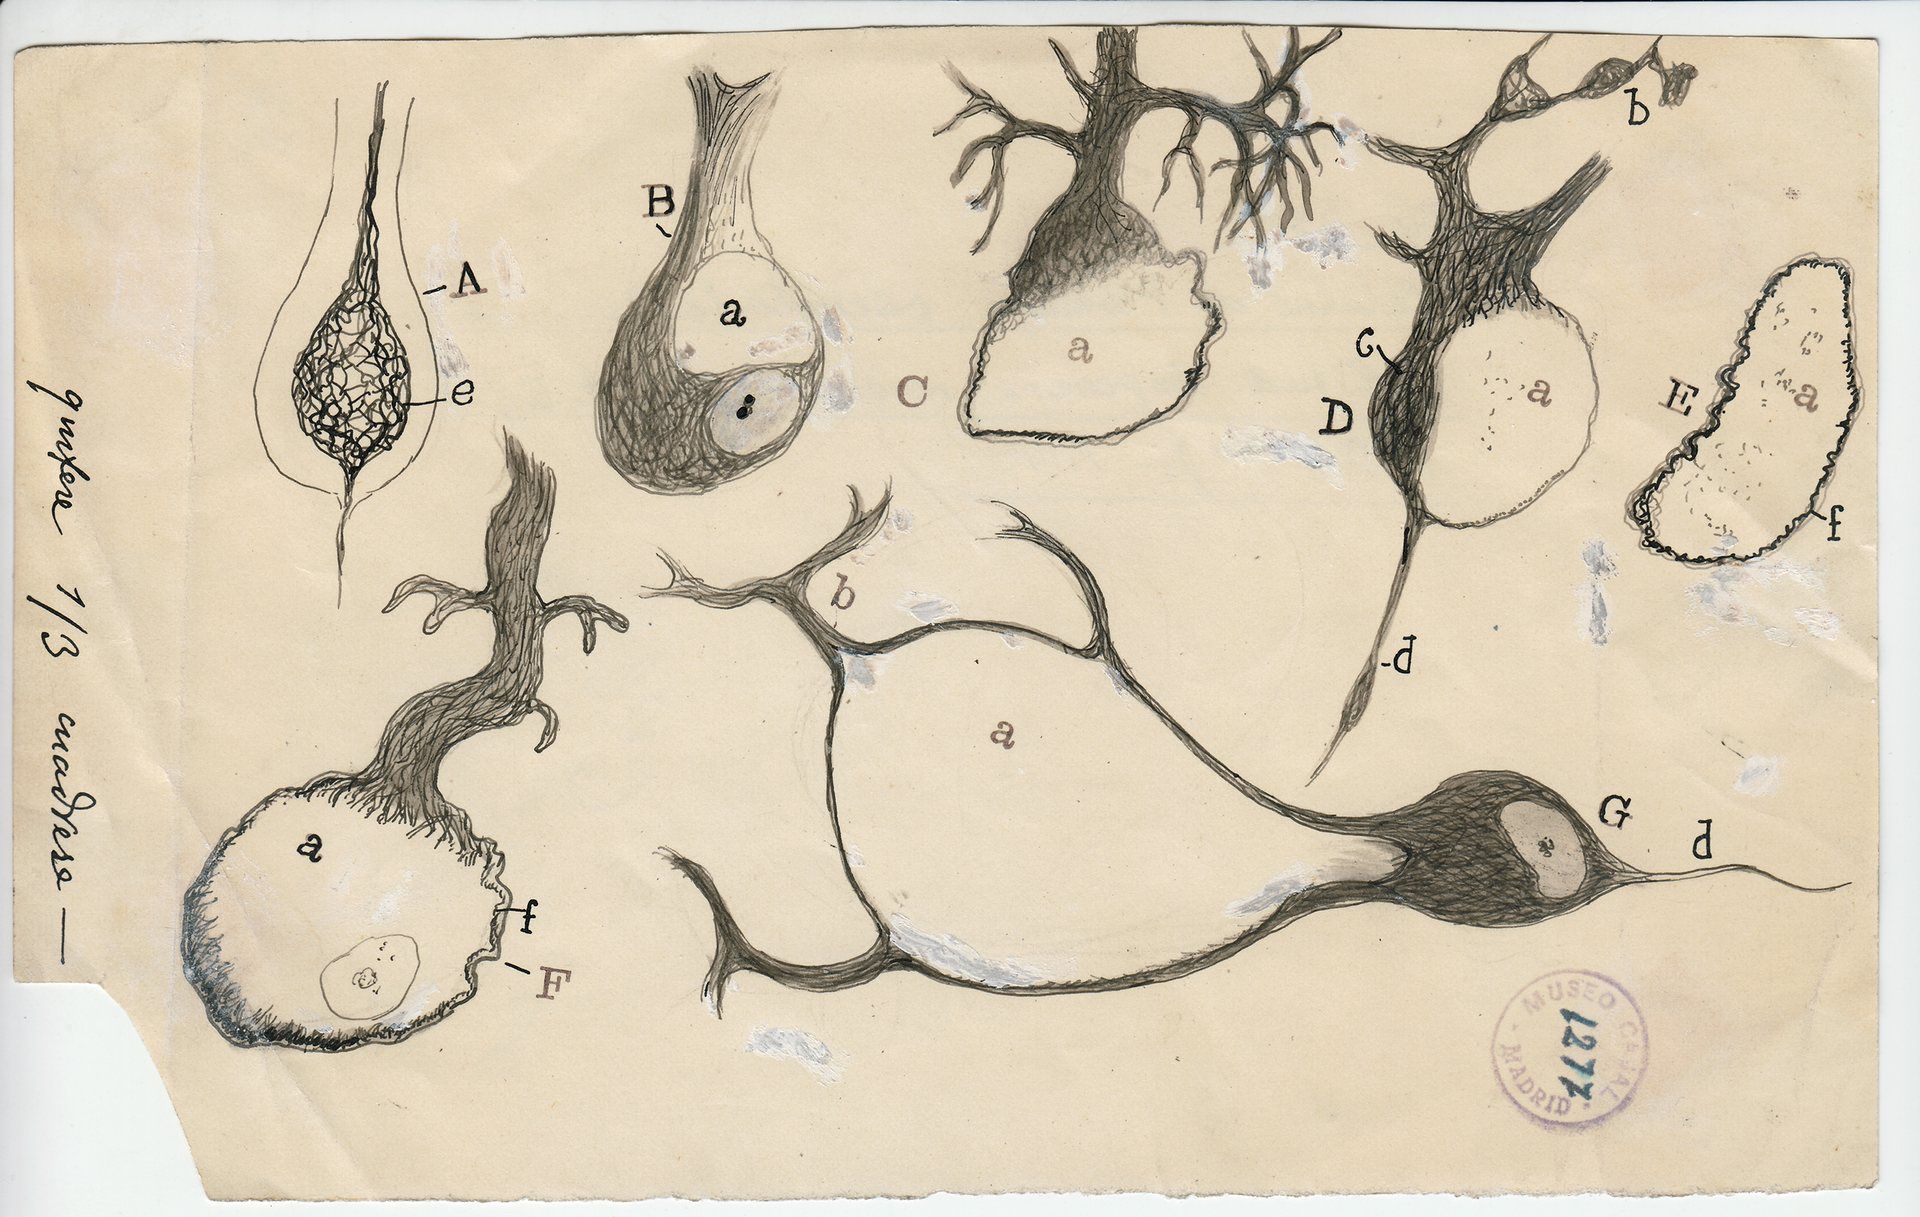 Así describió Ramón y Cajal, padre de la neurociencia, la estructura de las neuronas